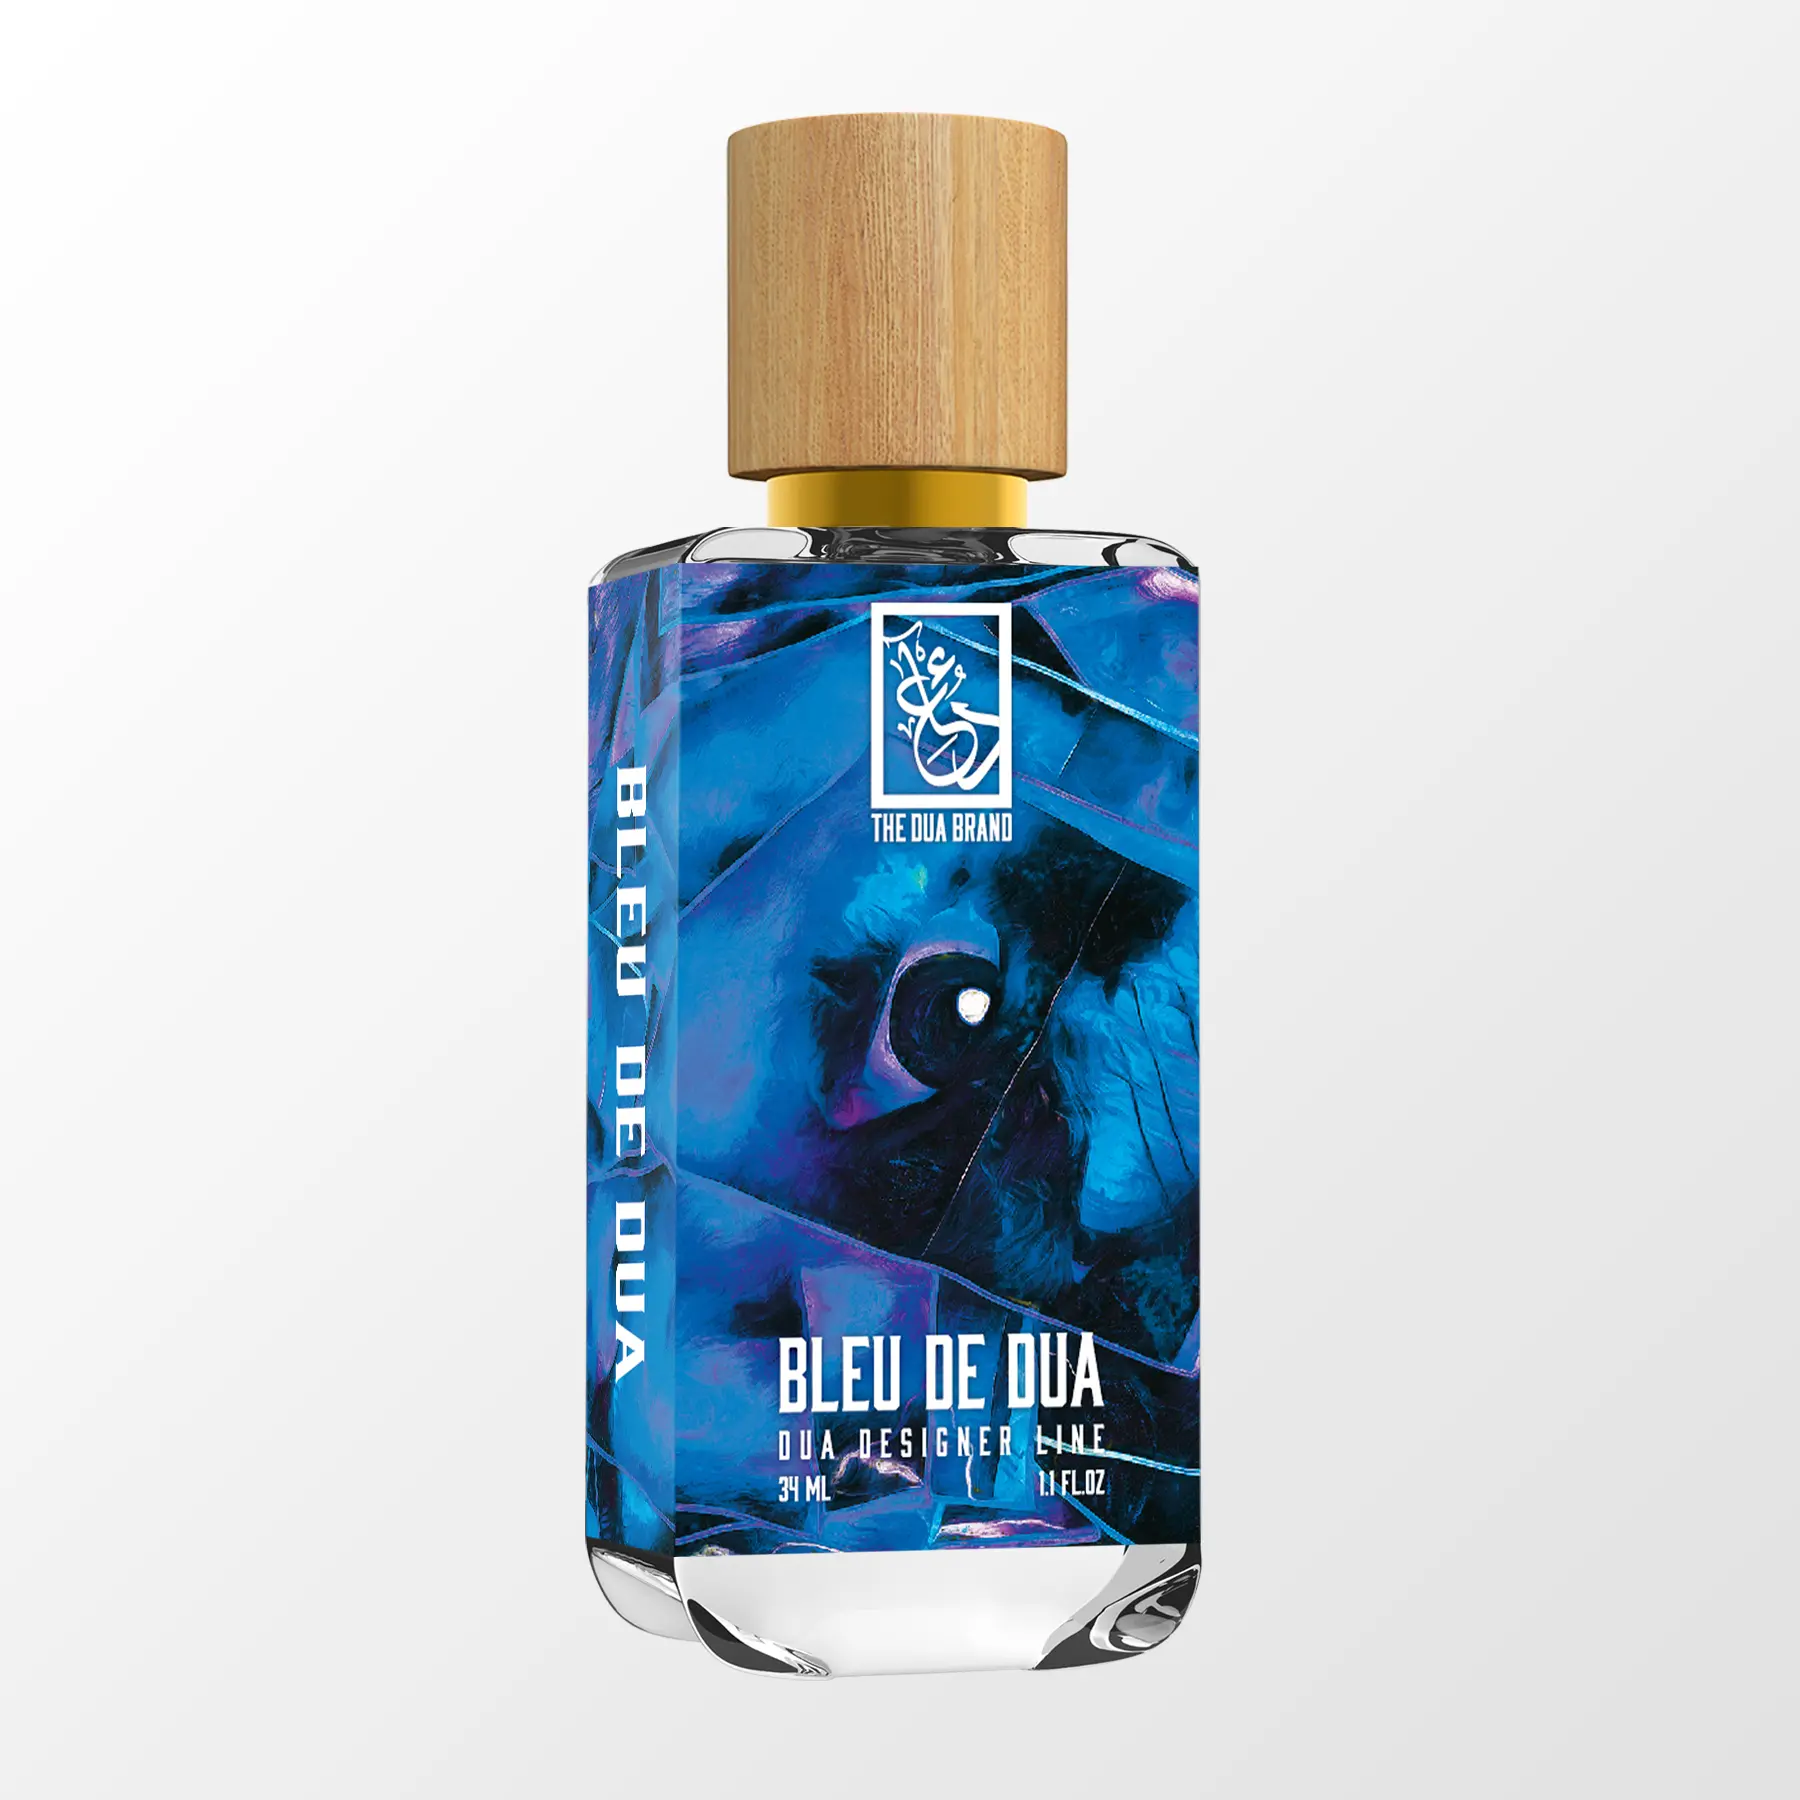 types of bleu de chanel perfume